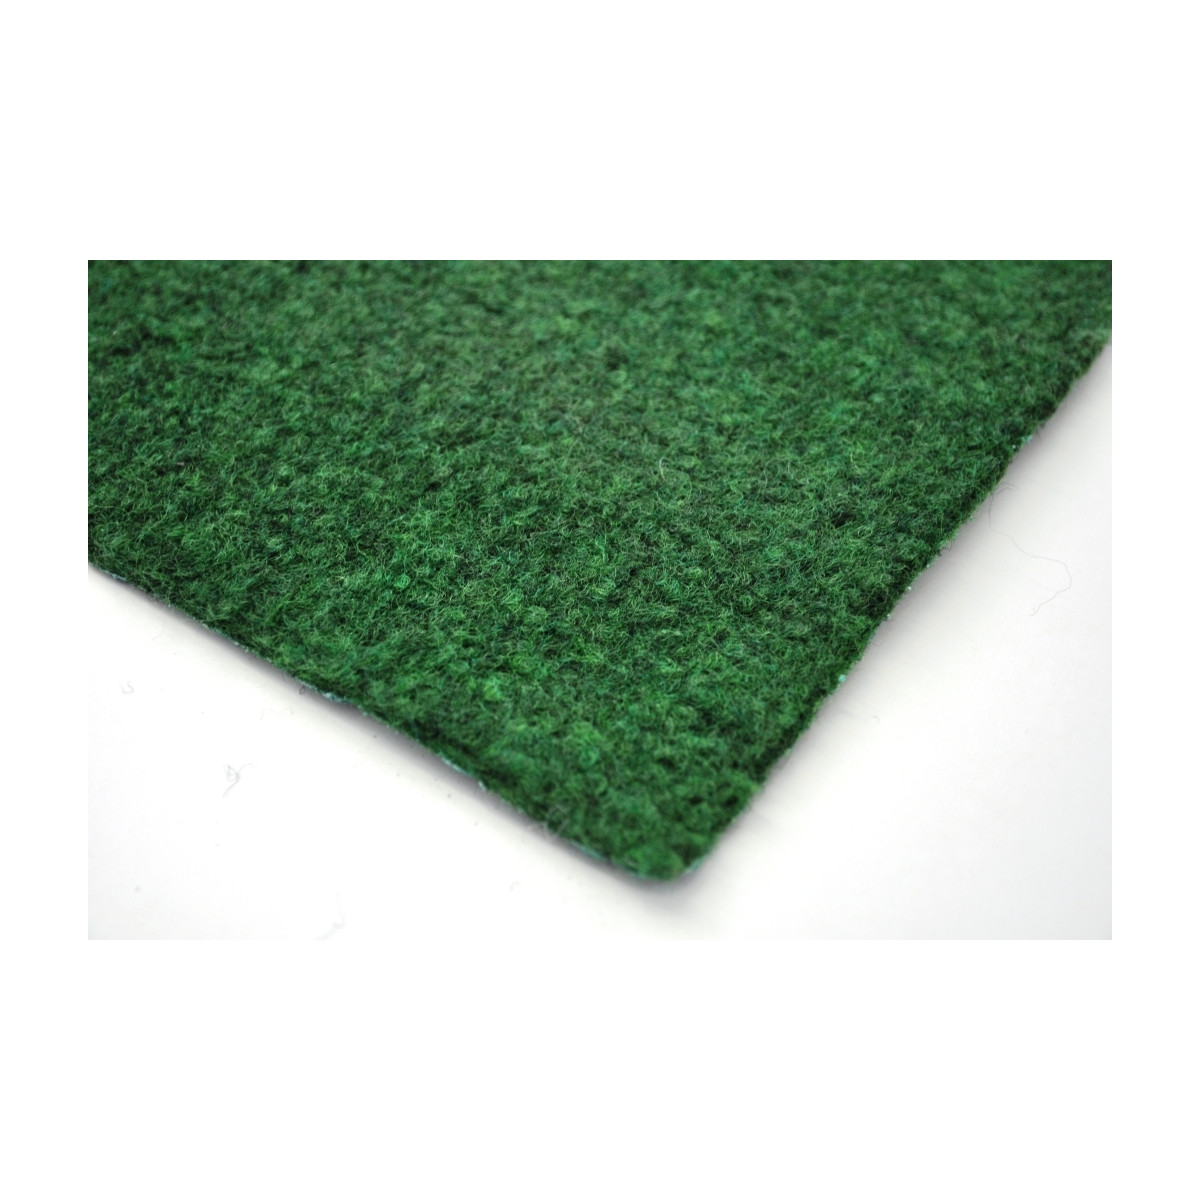 AKCE: 170x450 cm Travní koberec Sporting metrážní